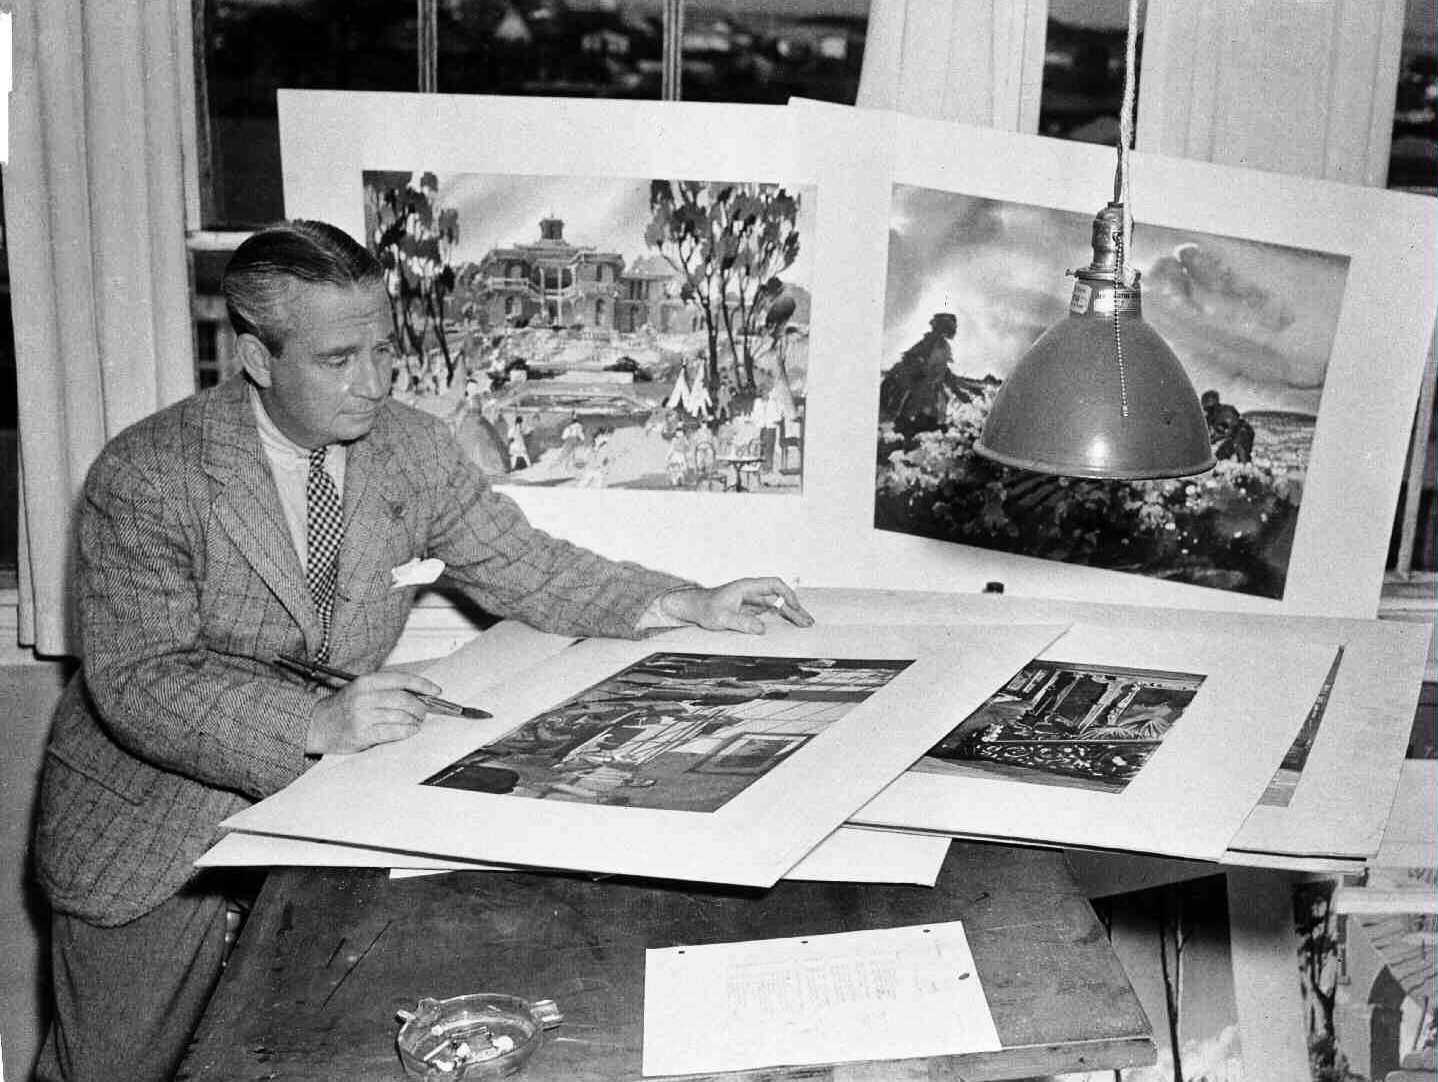 Production Designer William Cameron Menzies in 1939.